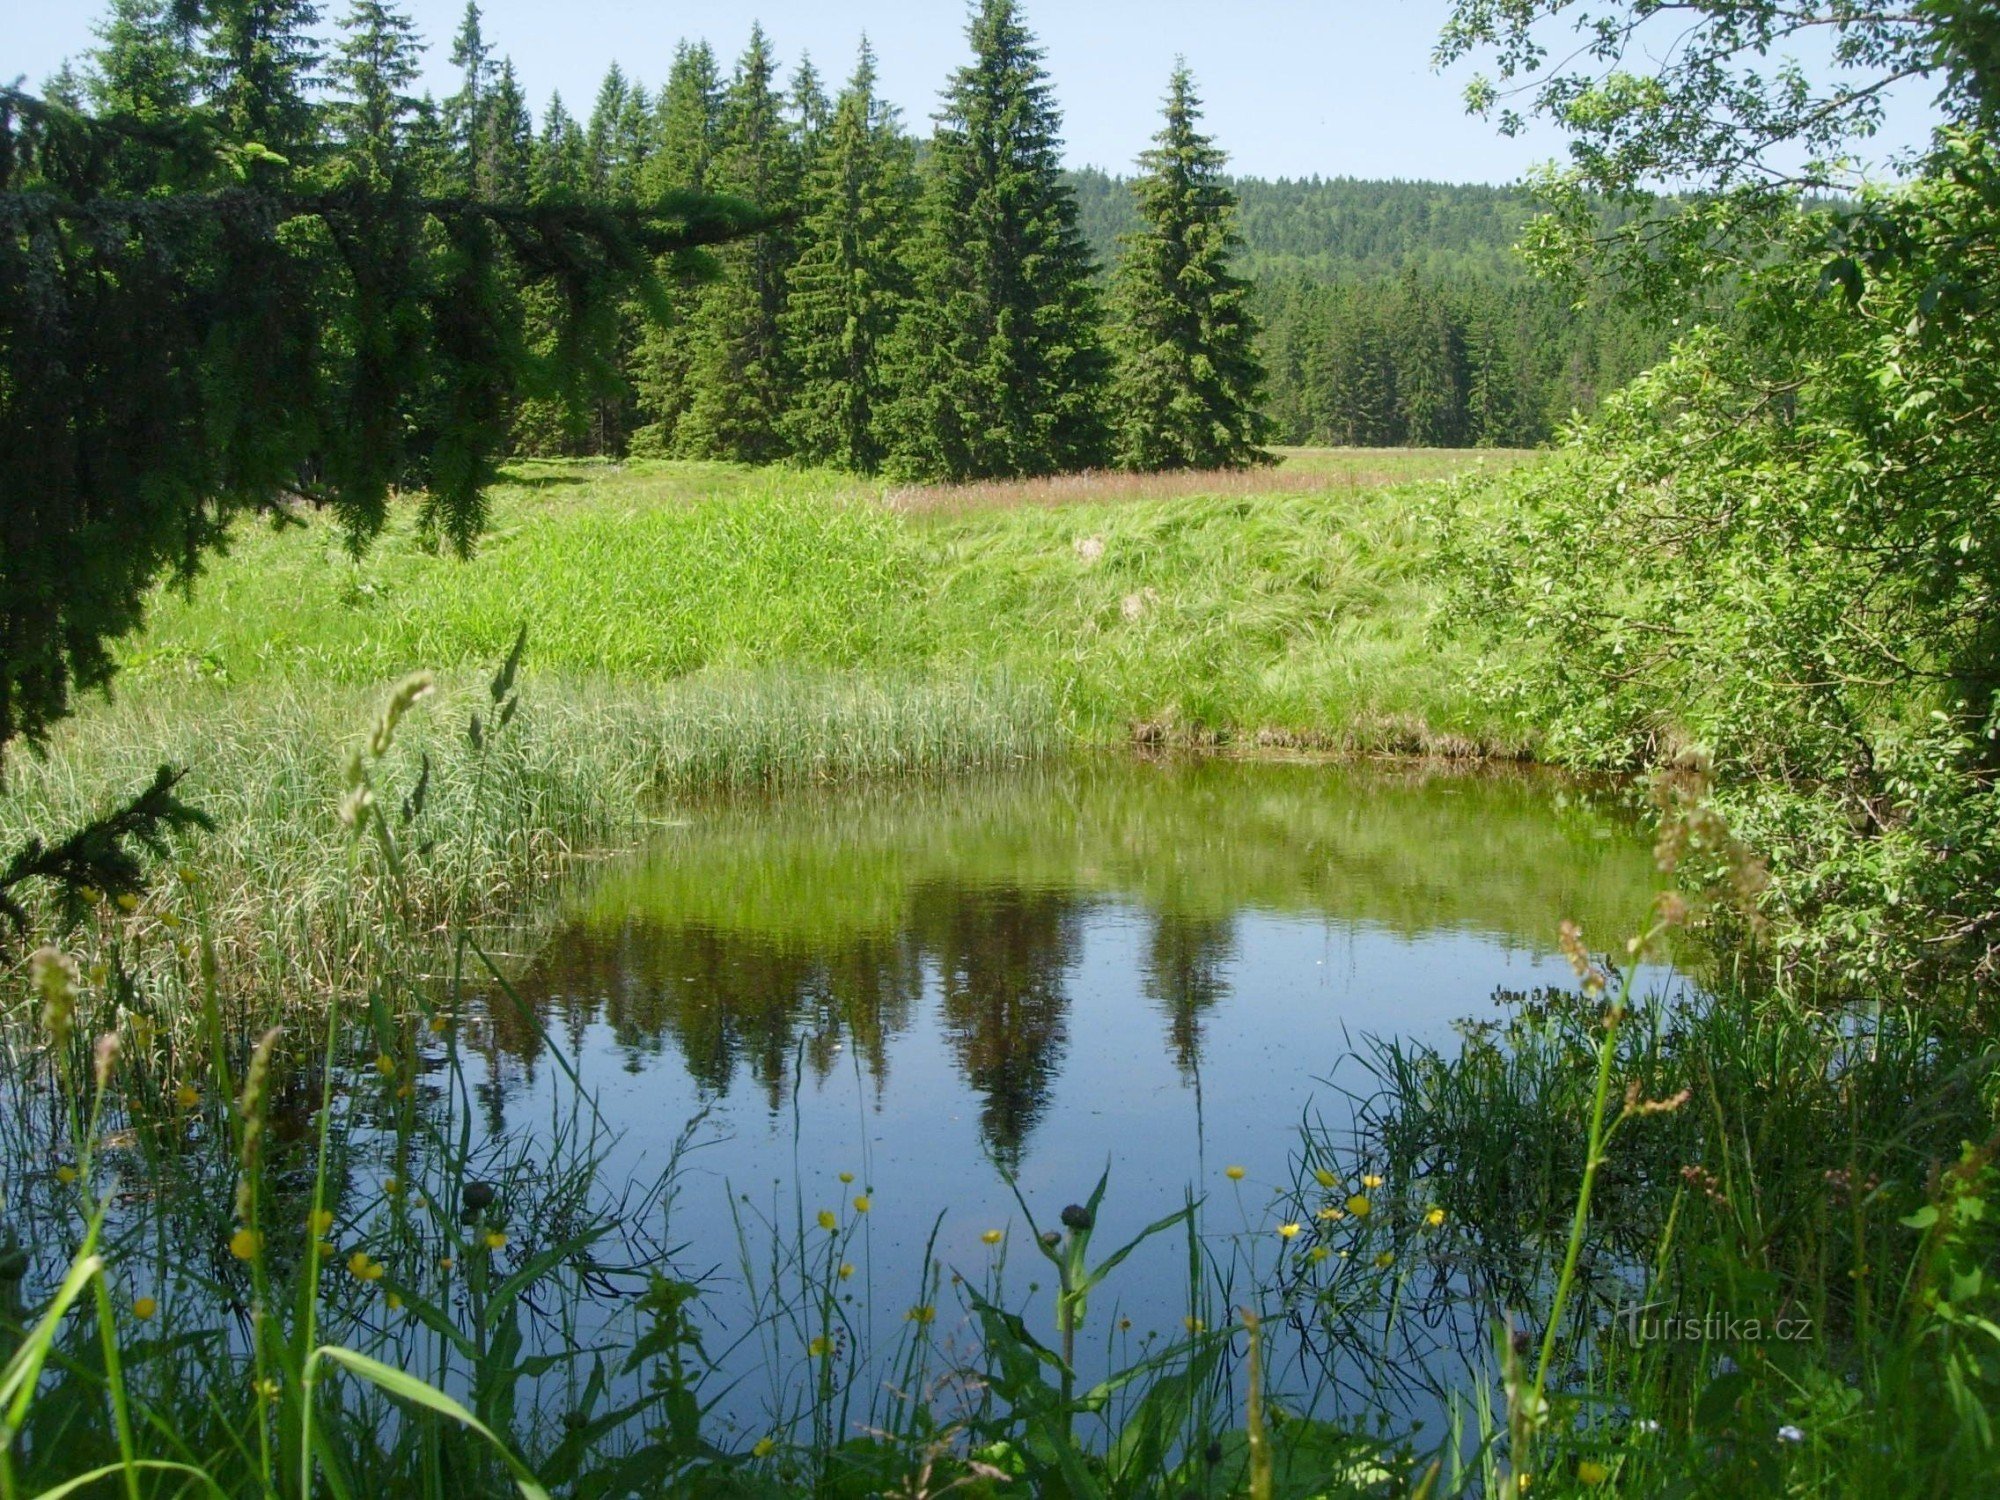 The lake on Nové Brunst